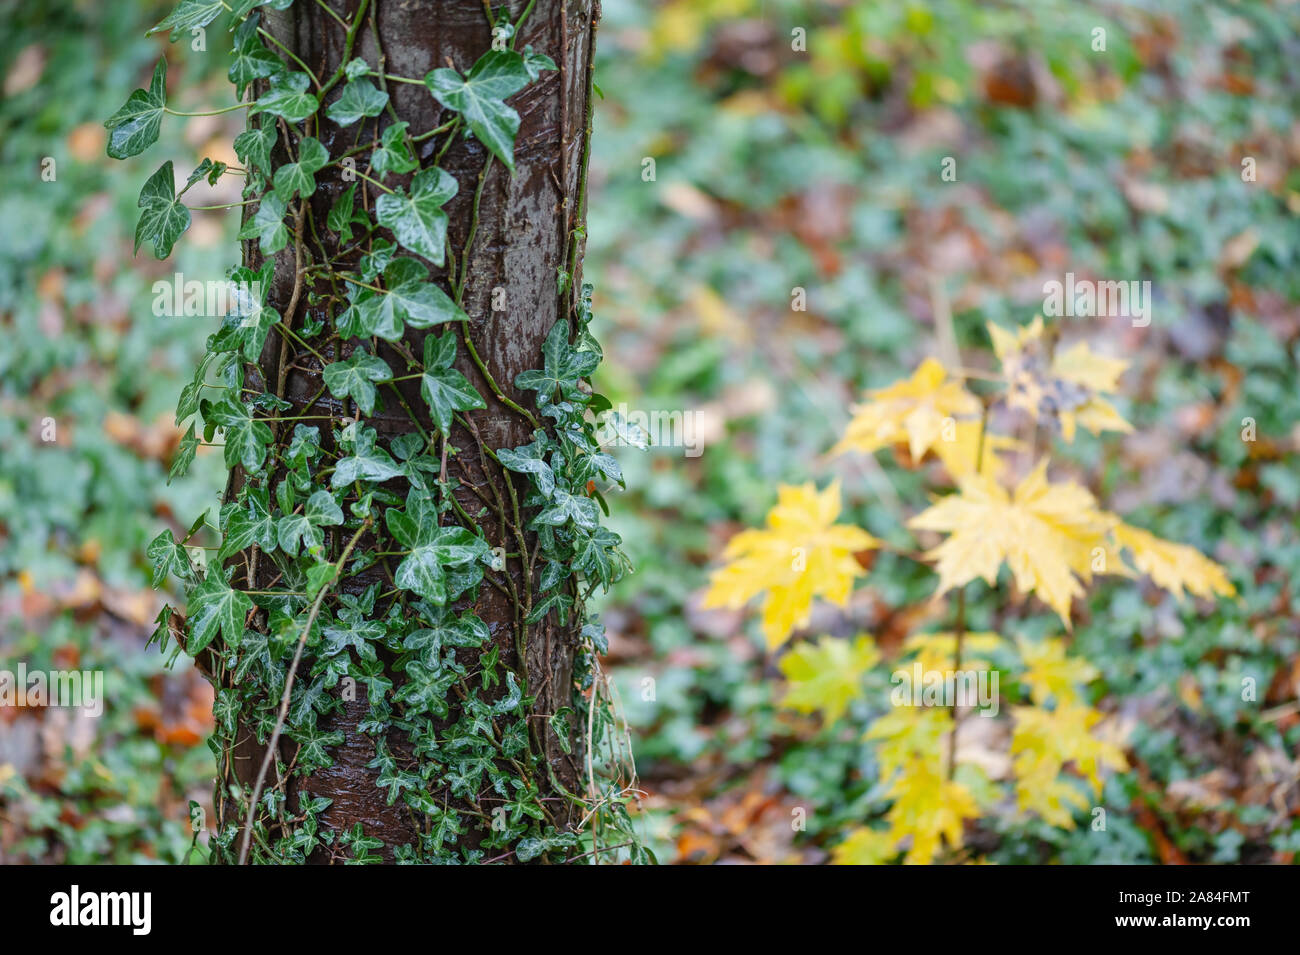 Tronco de árbol con ivy crecía, otoño hojas amarillas en el fondo. Foto de stock